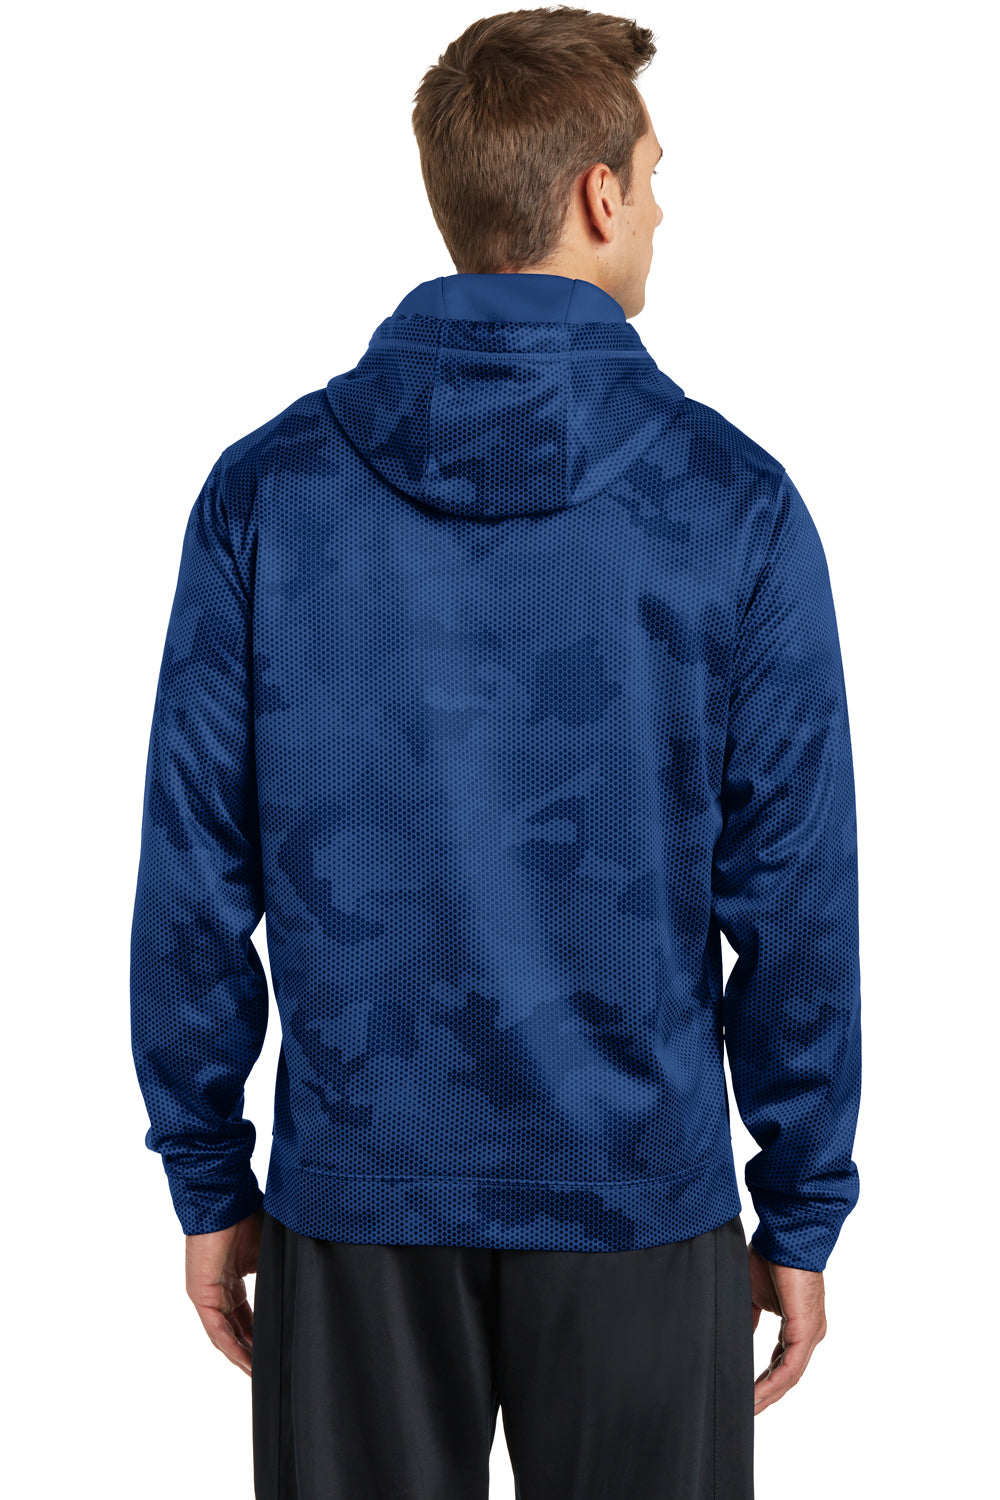 Sport-Tek ST240 Mens Sport-Wick CamoHex Moisture Wicking Fleece Hooded Sweatshirt Hoodie Royal Blue Back